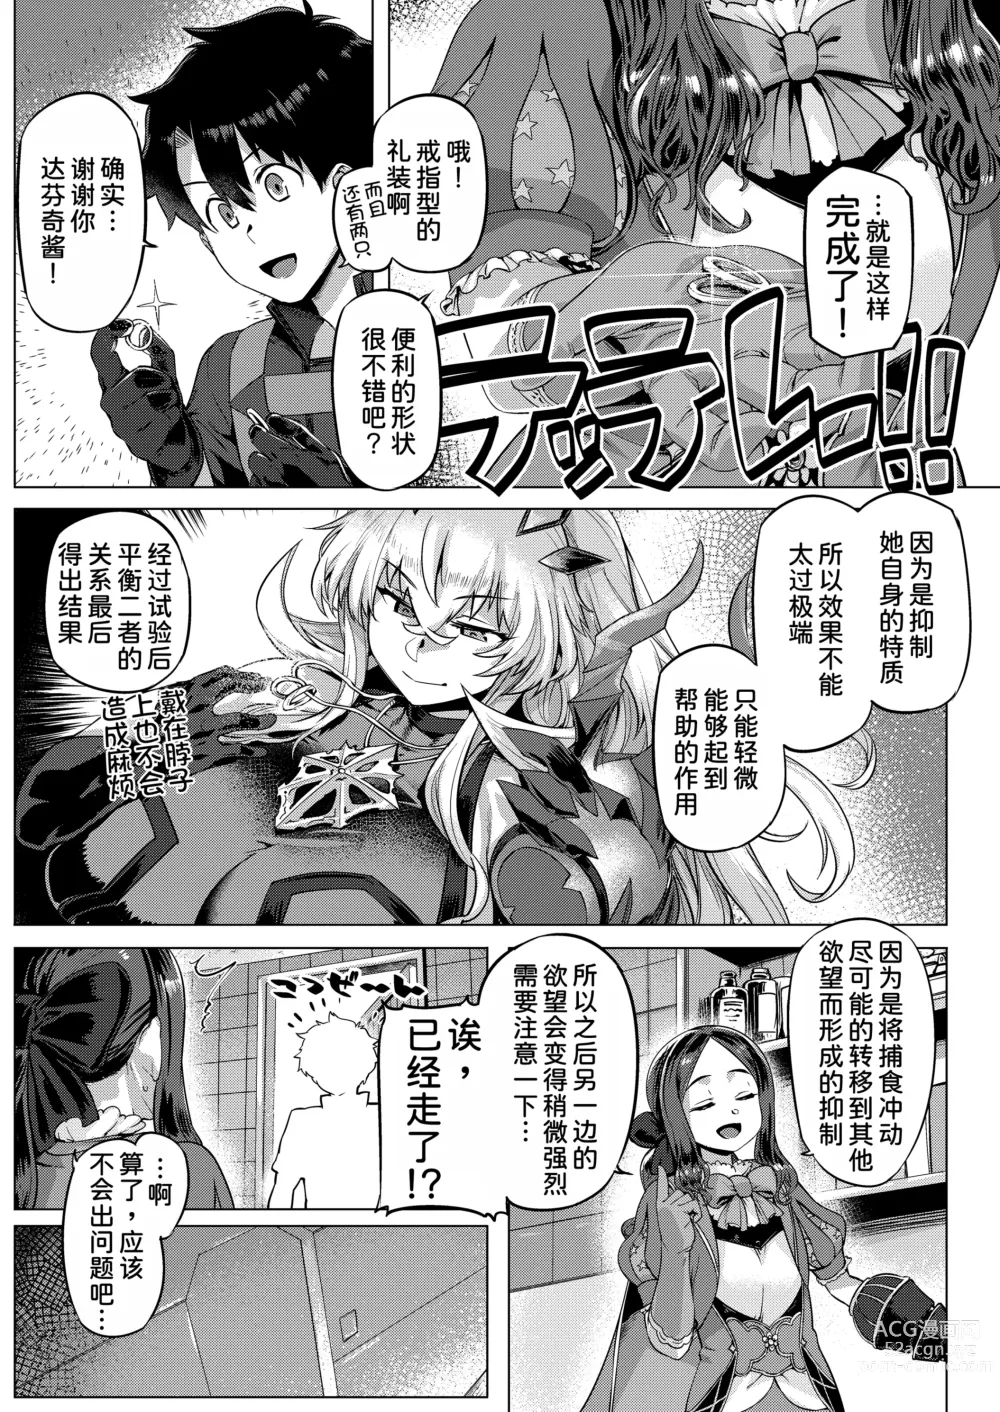 Page 7 of doujinshi Tokumori bage Donburi